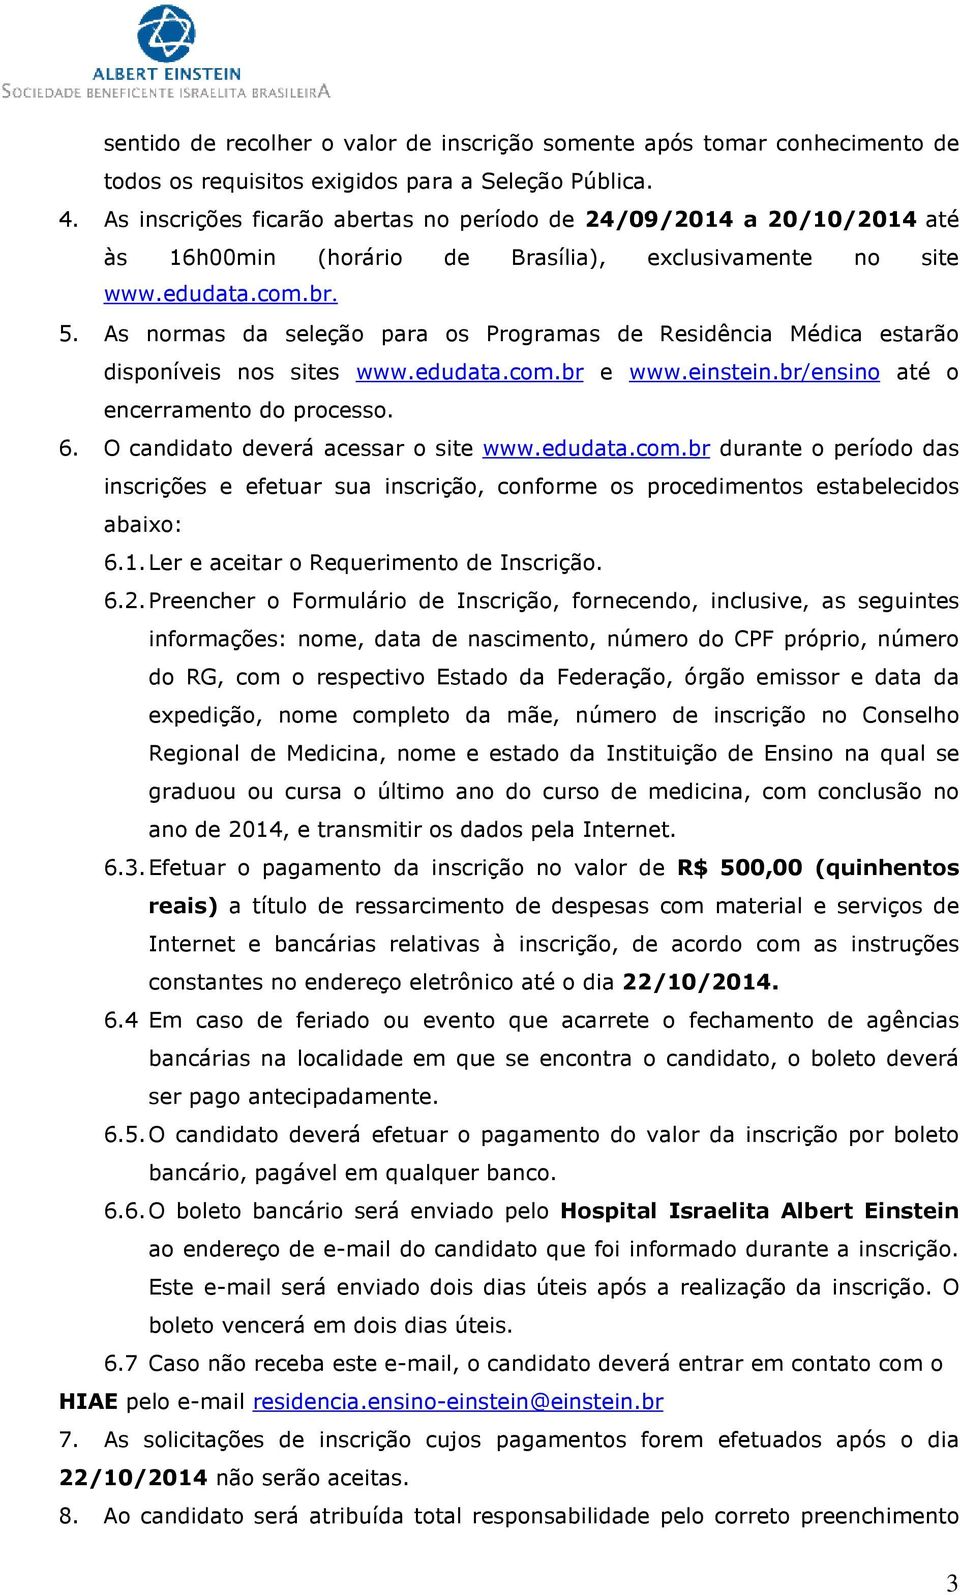 As normas da seleção para os Programas de Residência Médica estarão disponíveis nos sites www.edudata.com.br e www.einstein.br/ensino até o encerramento do processo. 6.